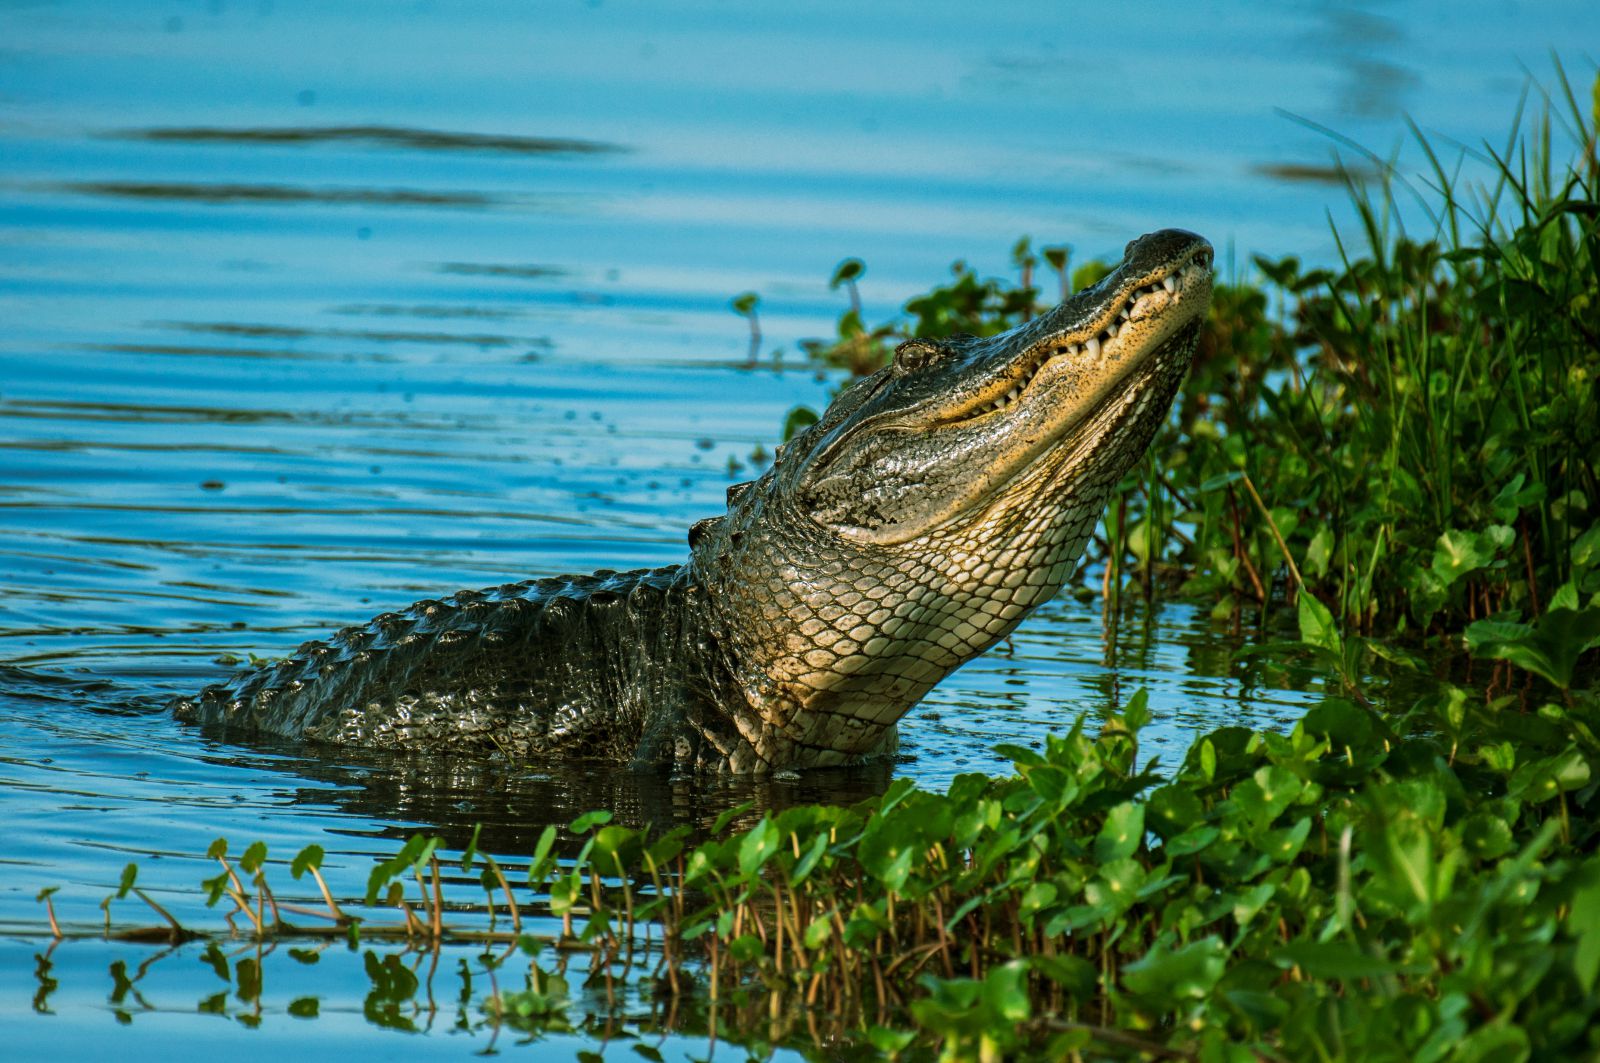 Crocodilo com a cabeça levantada no lago